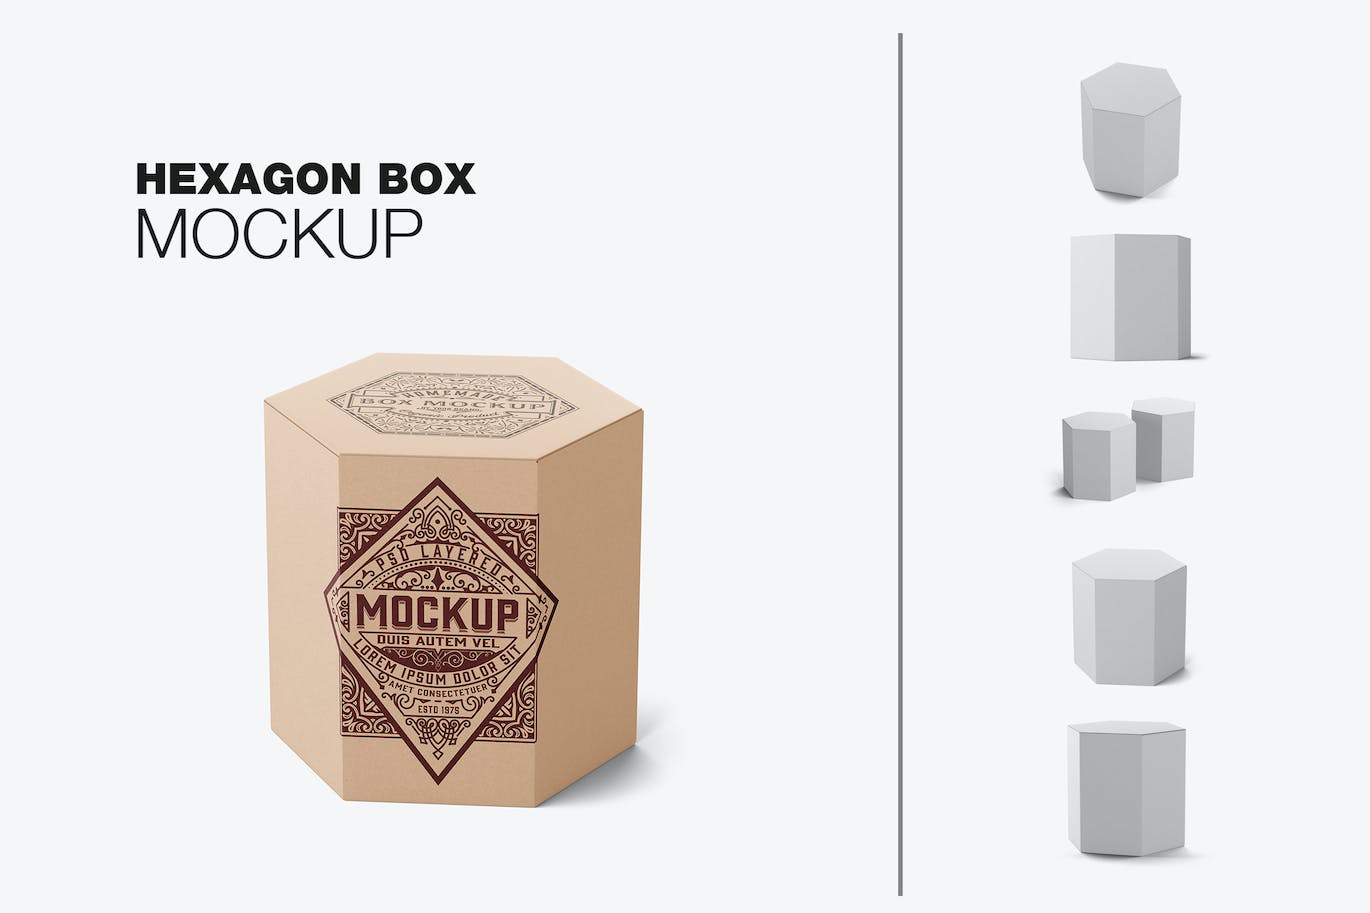 六边形长方体纸盒包装设计样机 Hexagonal Box Mockup 样机素材 第1张